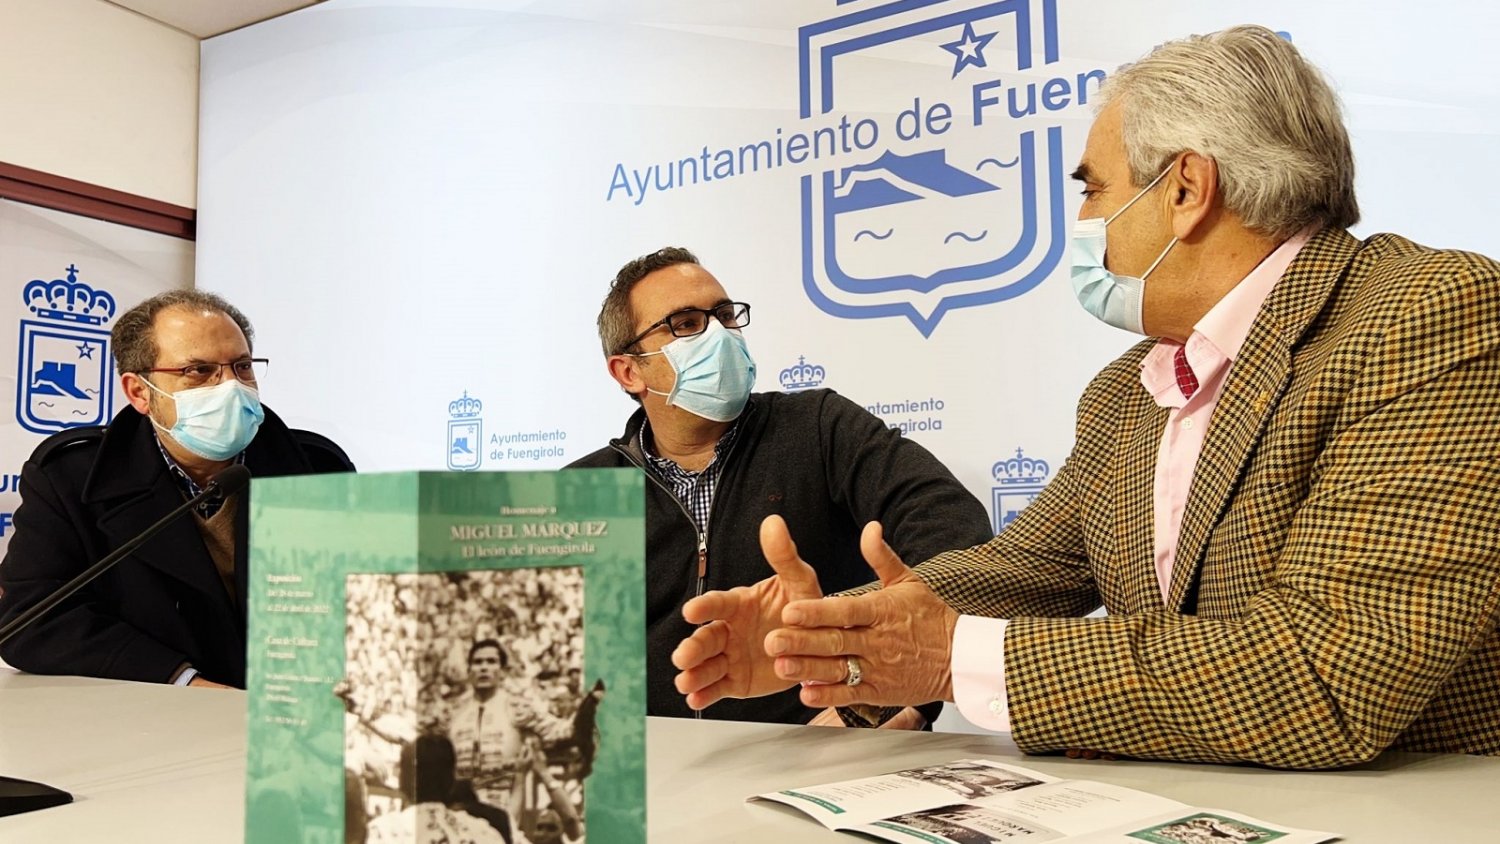 El Ayuntamiento de Fuengirola rinde homenaje a la figura de Miguel Márquez